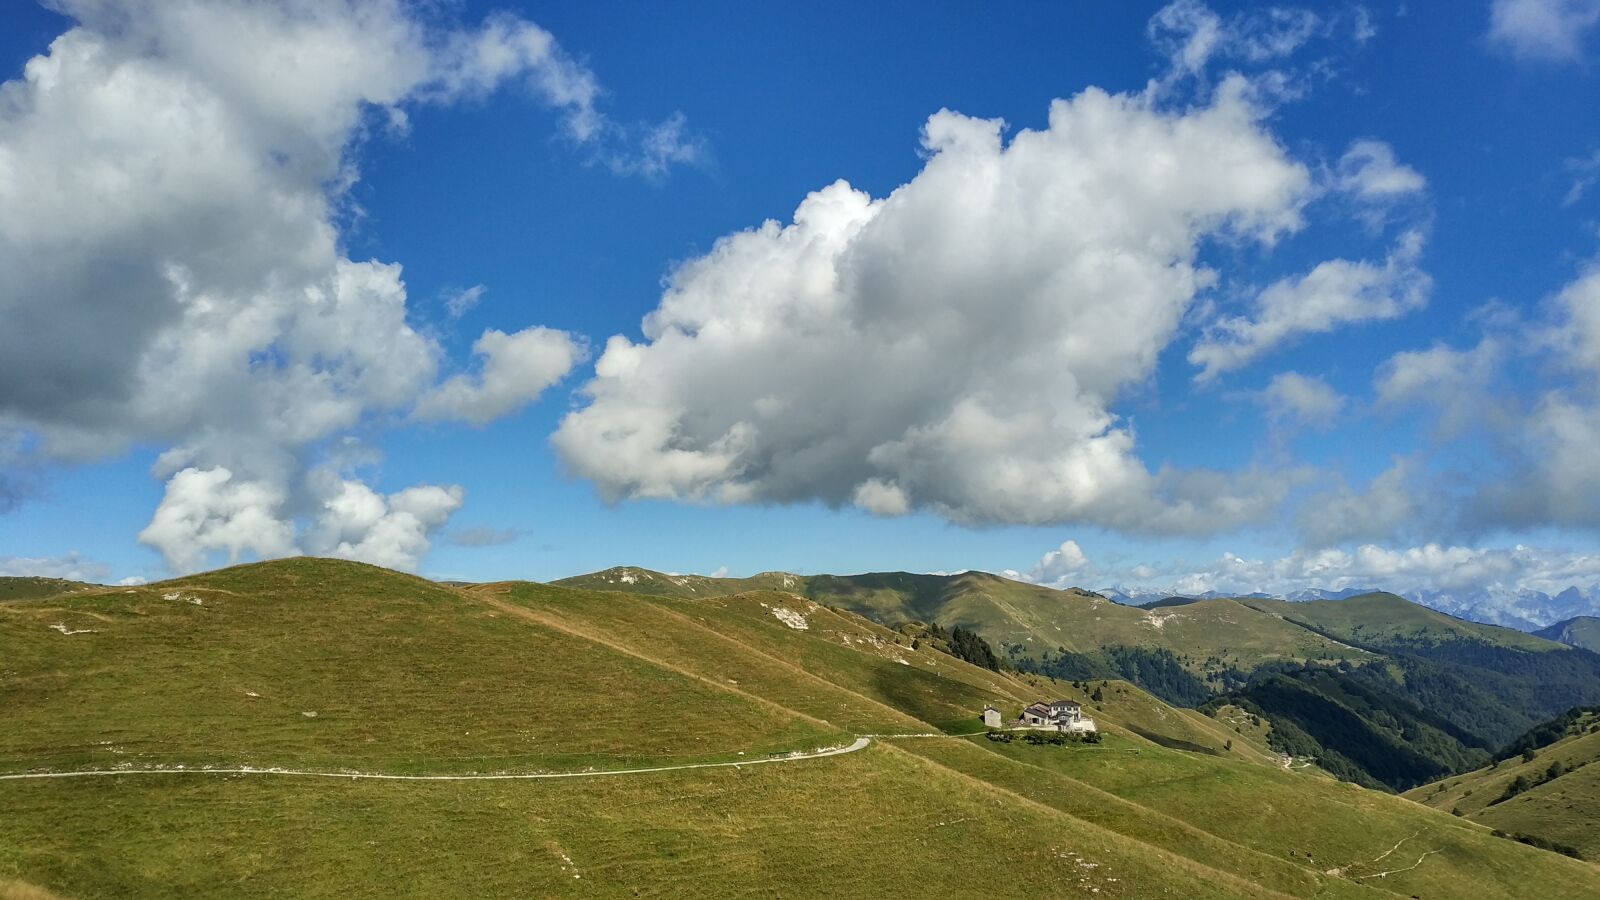 Xiaomi Mi MIX 2 sample photo. Mountains, sky, clouds photography